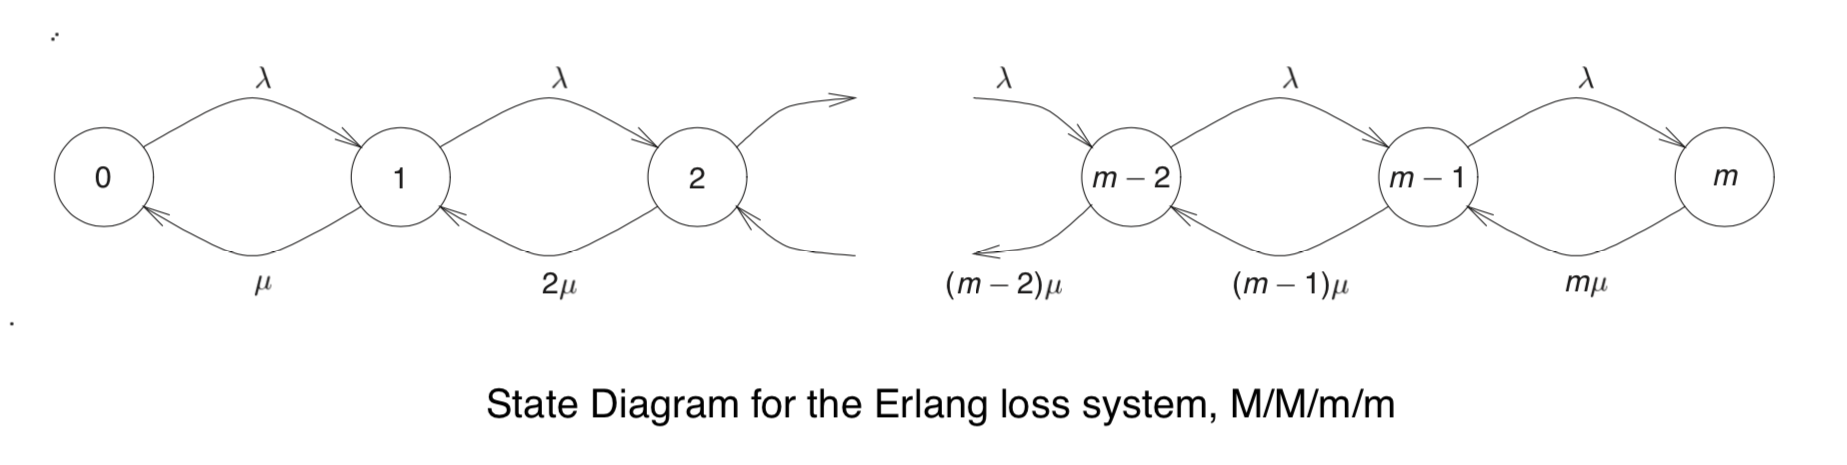 M/M/m/m 排队系统的状态转移图